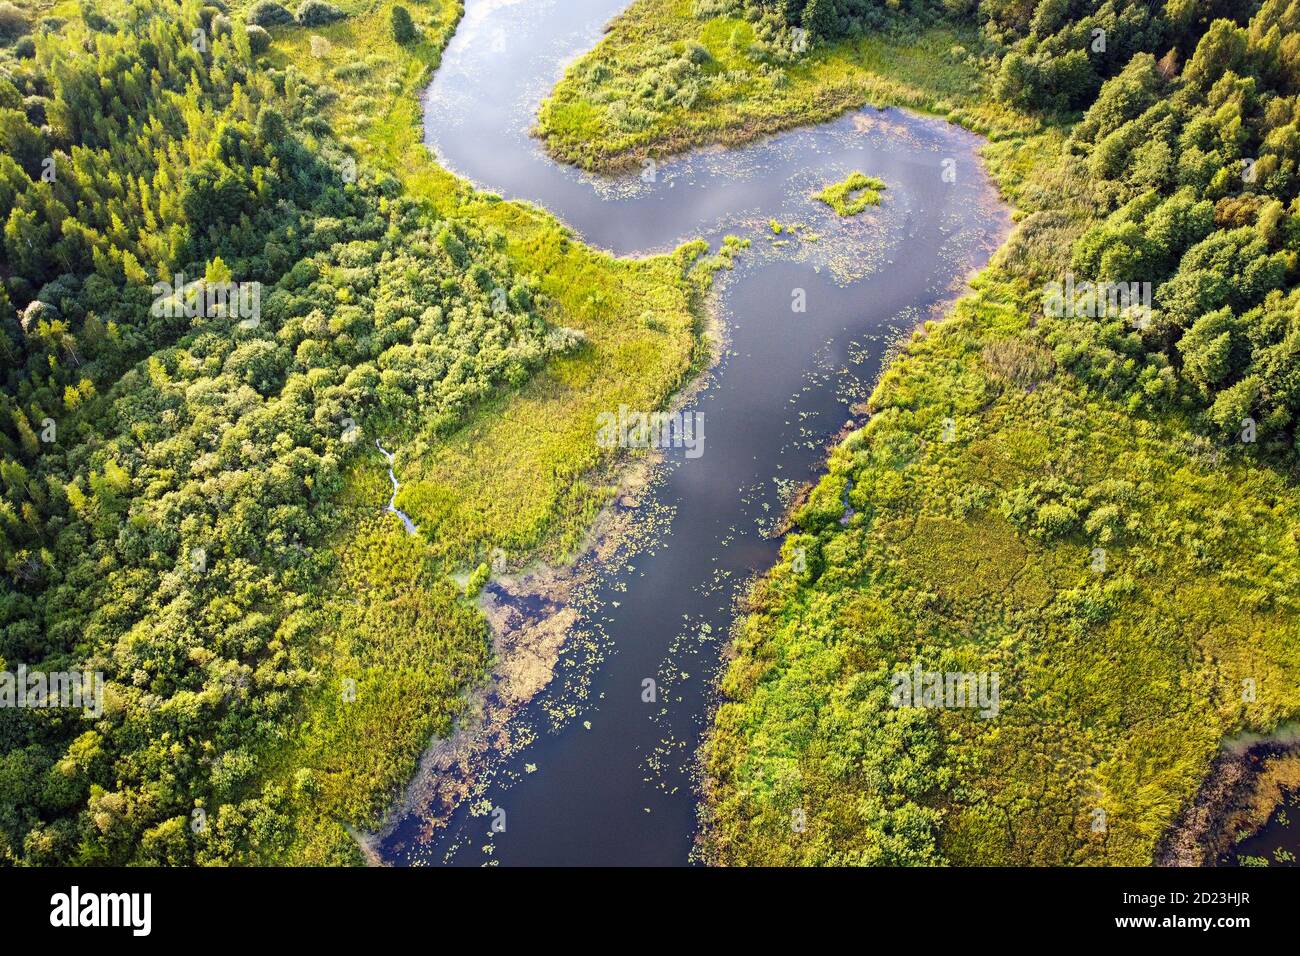 Luftaufnahme des Flusses, grünes Sumpfgras, Sommerlandschaft. Gewundener Fluss mit überwucherten Ufern, Blick von oben. Europäischer Natur Stockfoto